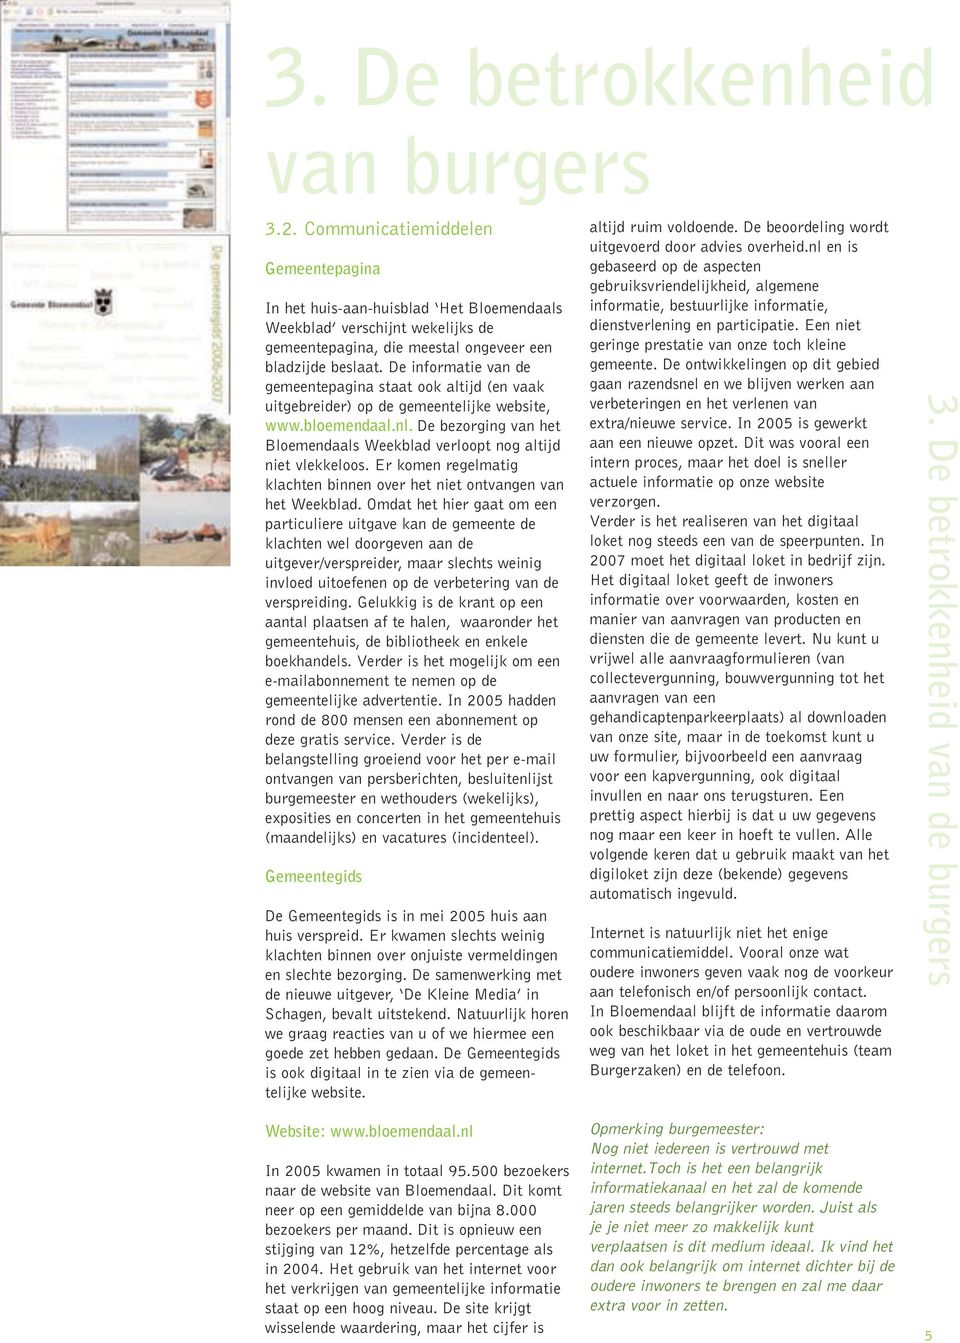 De informatie van de gemeentepagina staat ook altijd (en vaak uitgebreider) op de gemeentelijke website, www.bloemendaal.nl.